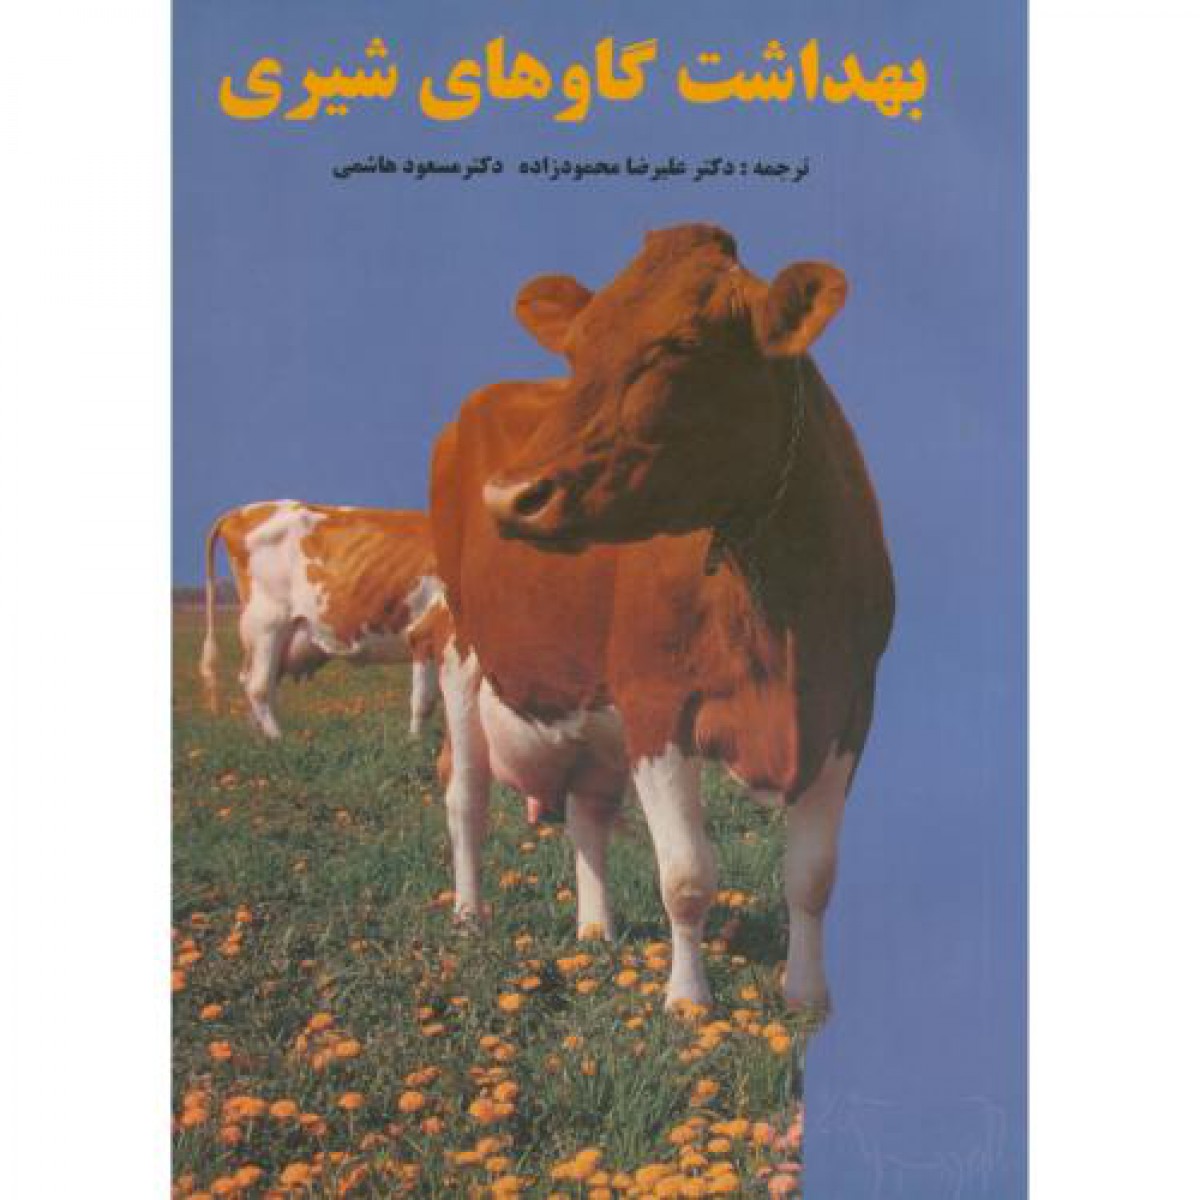 بهداشت گاوهای شیری/علیرضامحمودزاده/مسعودهاشمی/نشرفرهنگ جامع